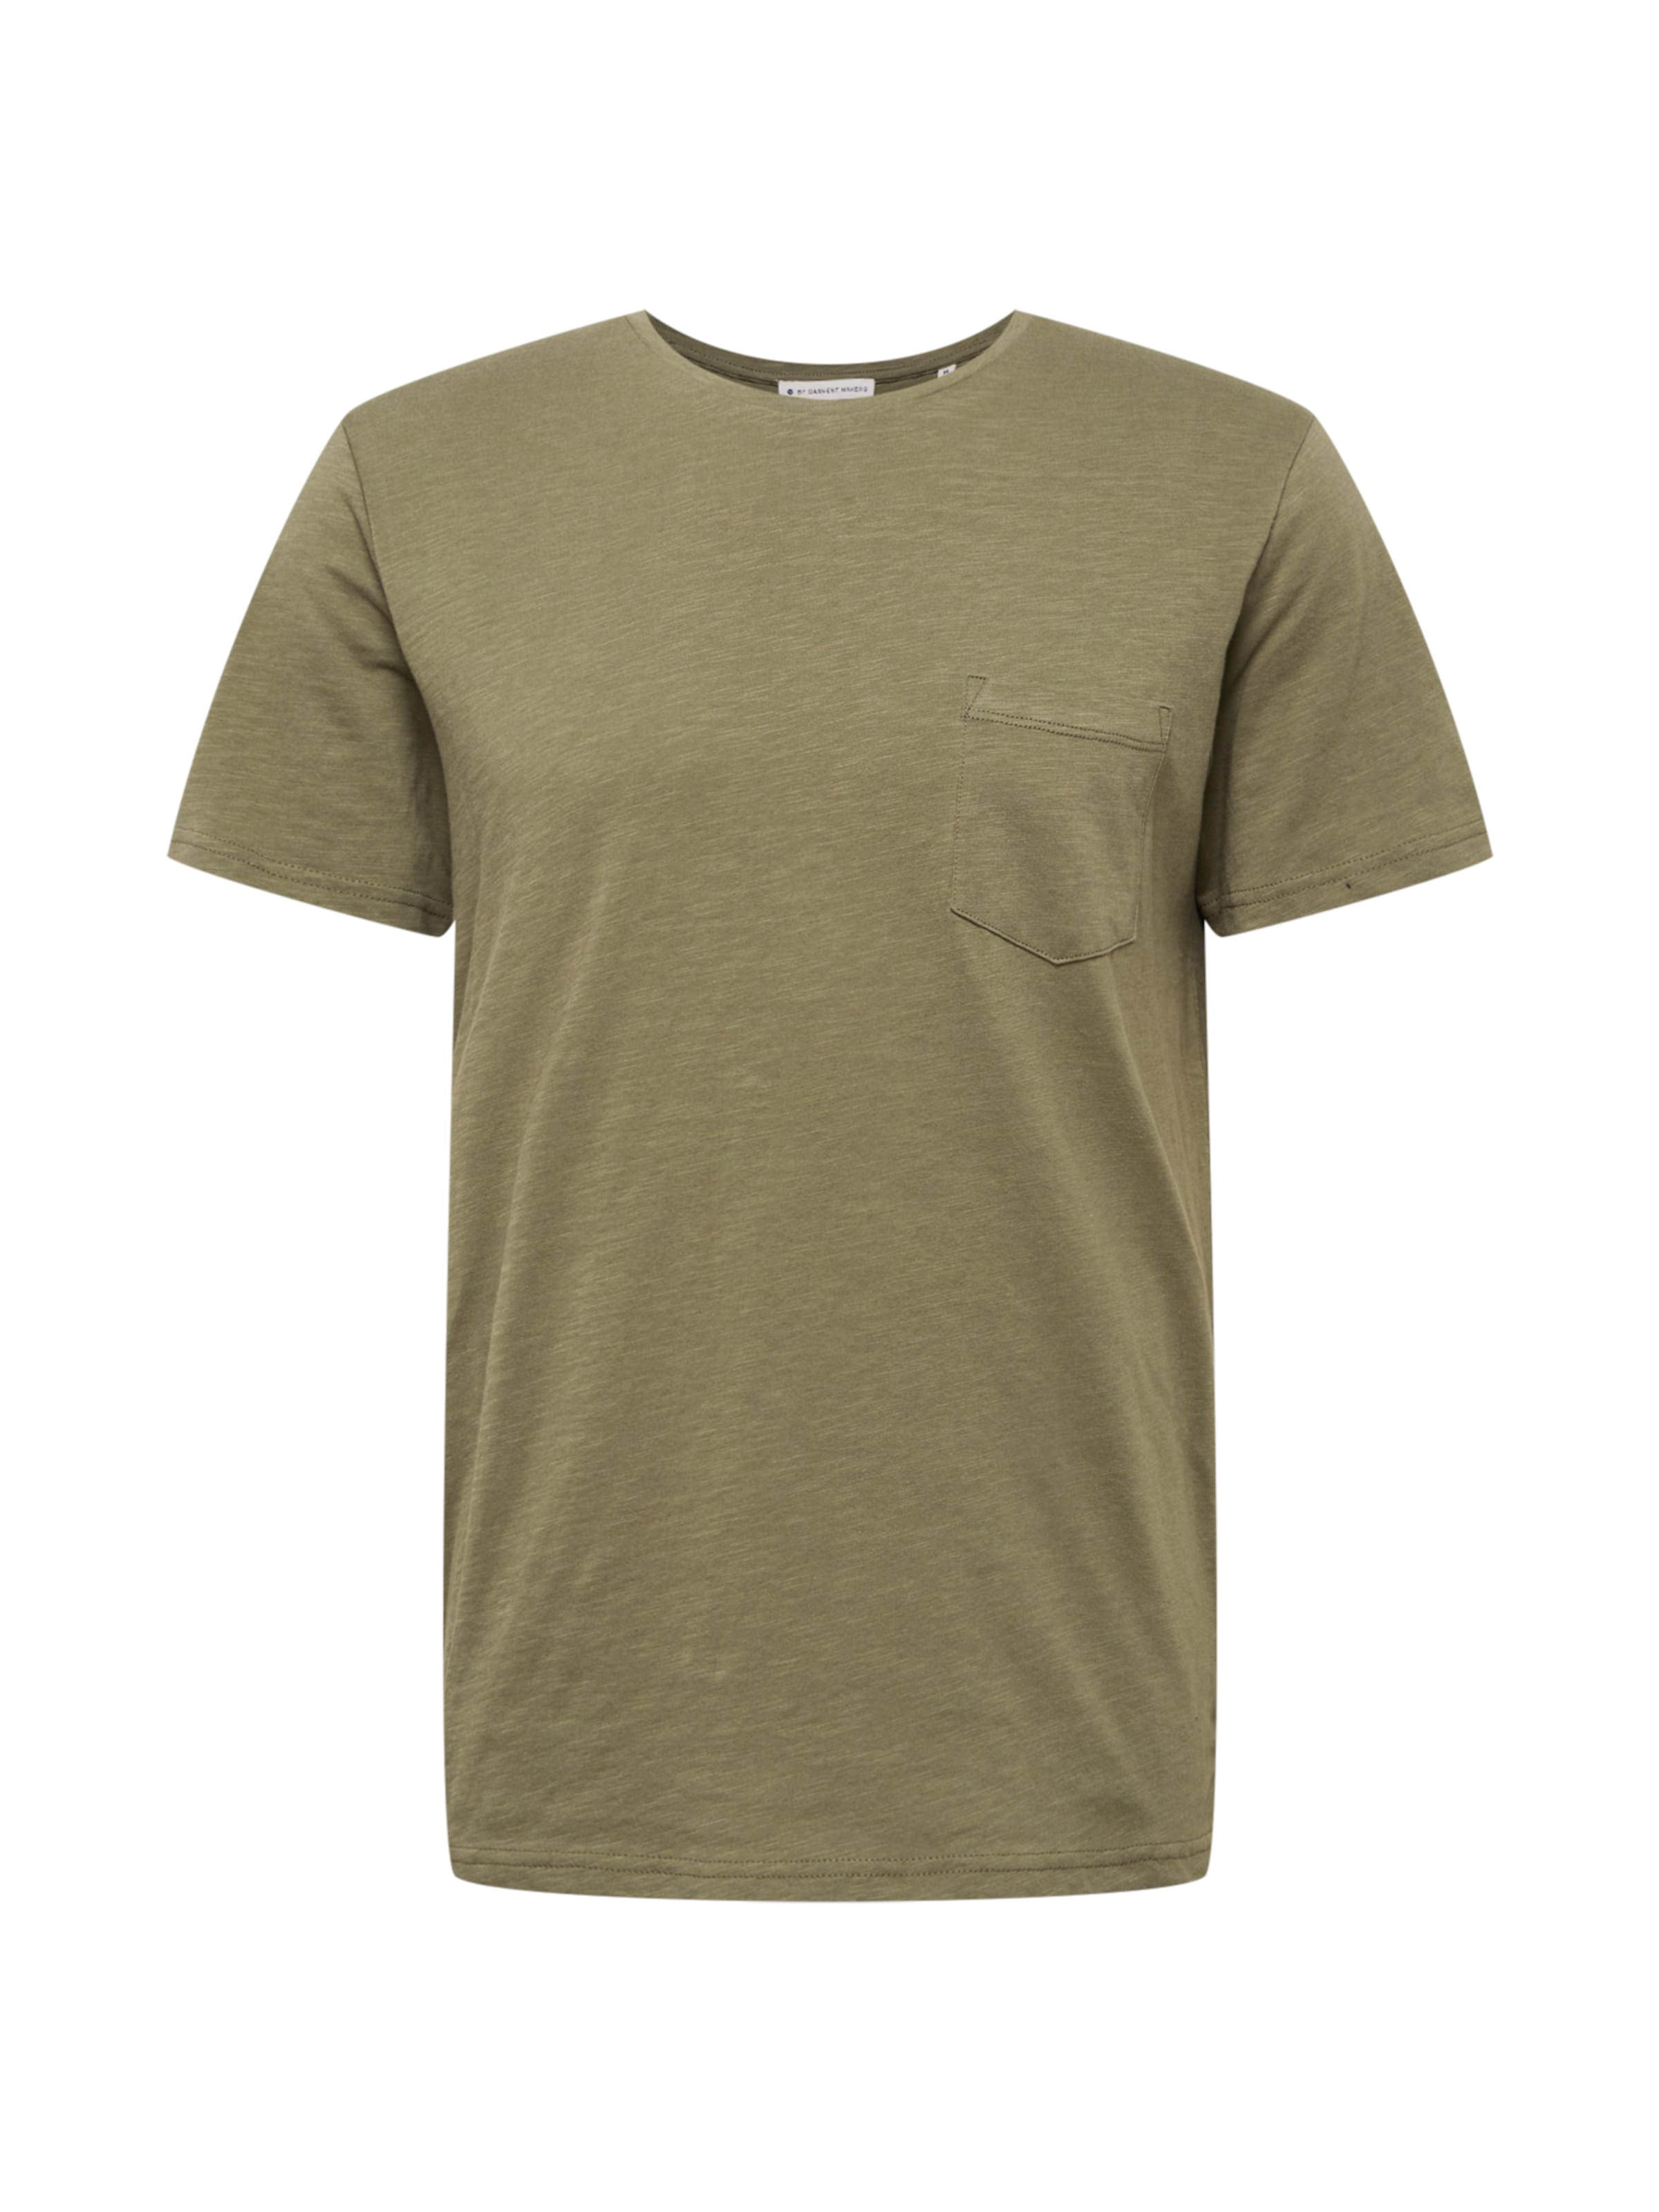 Männer Shirts By Garment Makers T-Shirt in Khaki - QM56383